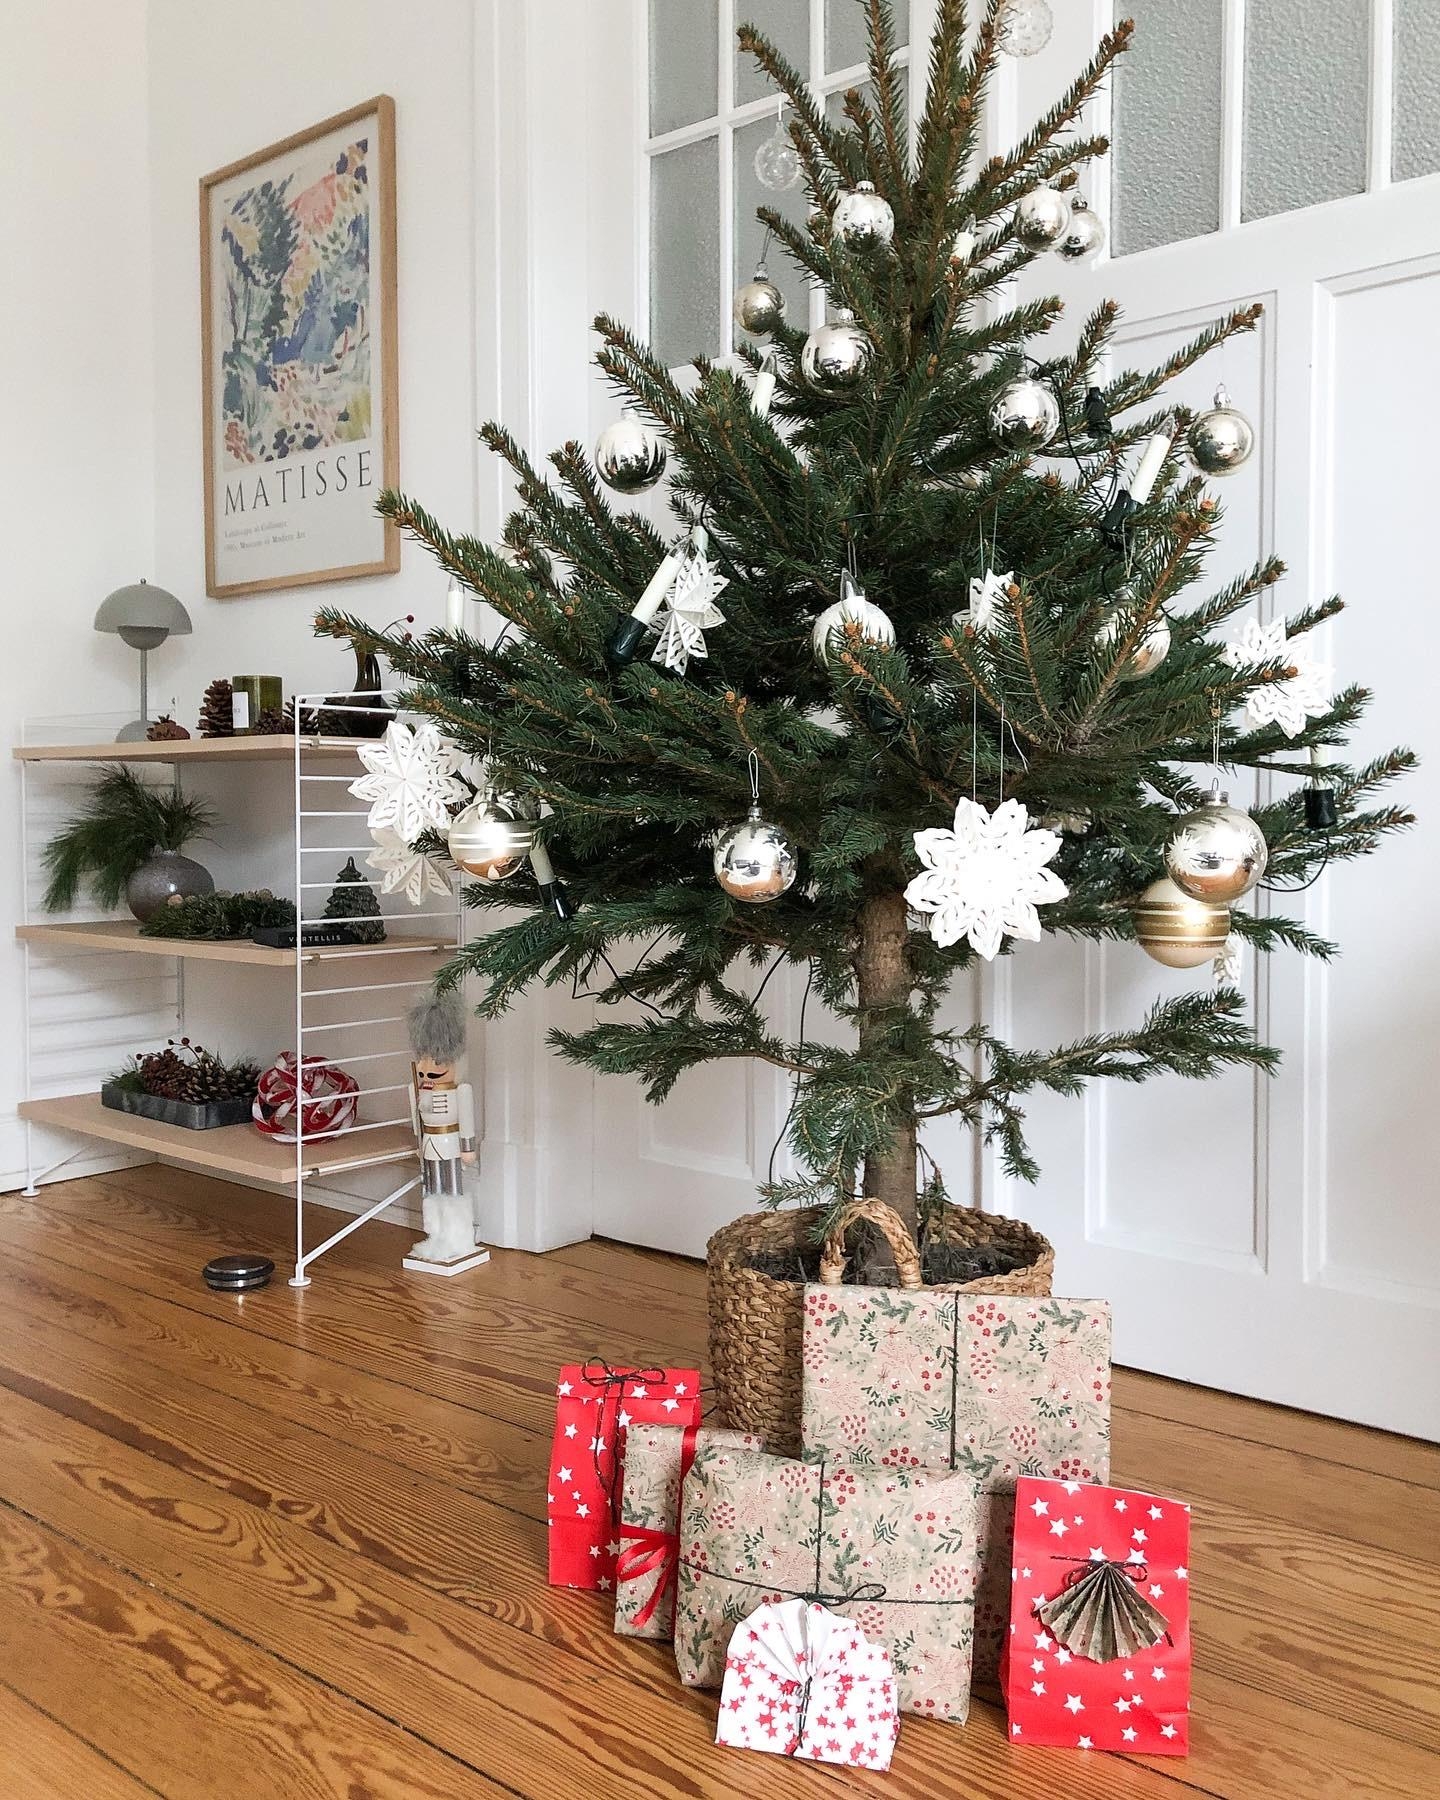 #advent #weihnachten #tannenbaum #christbaum #weihnachtsdeko #dekoration #wohnzimmer #stringfurniture #midcenturydesign